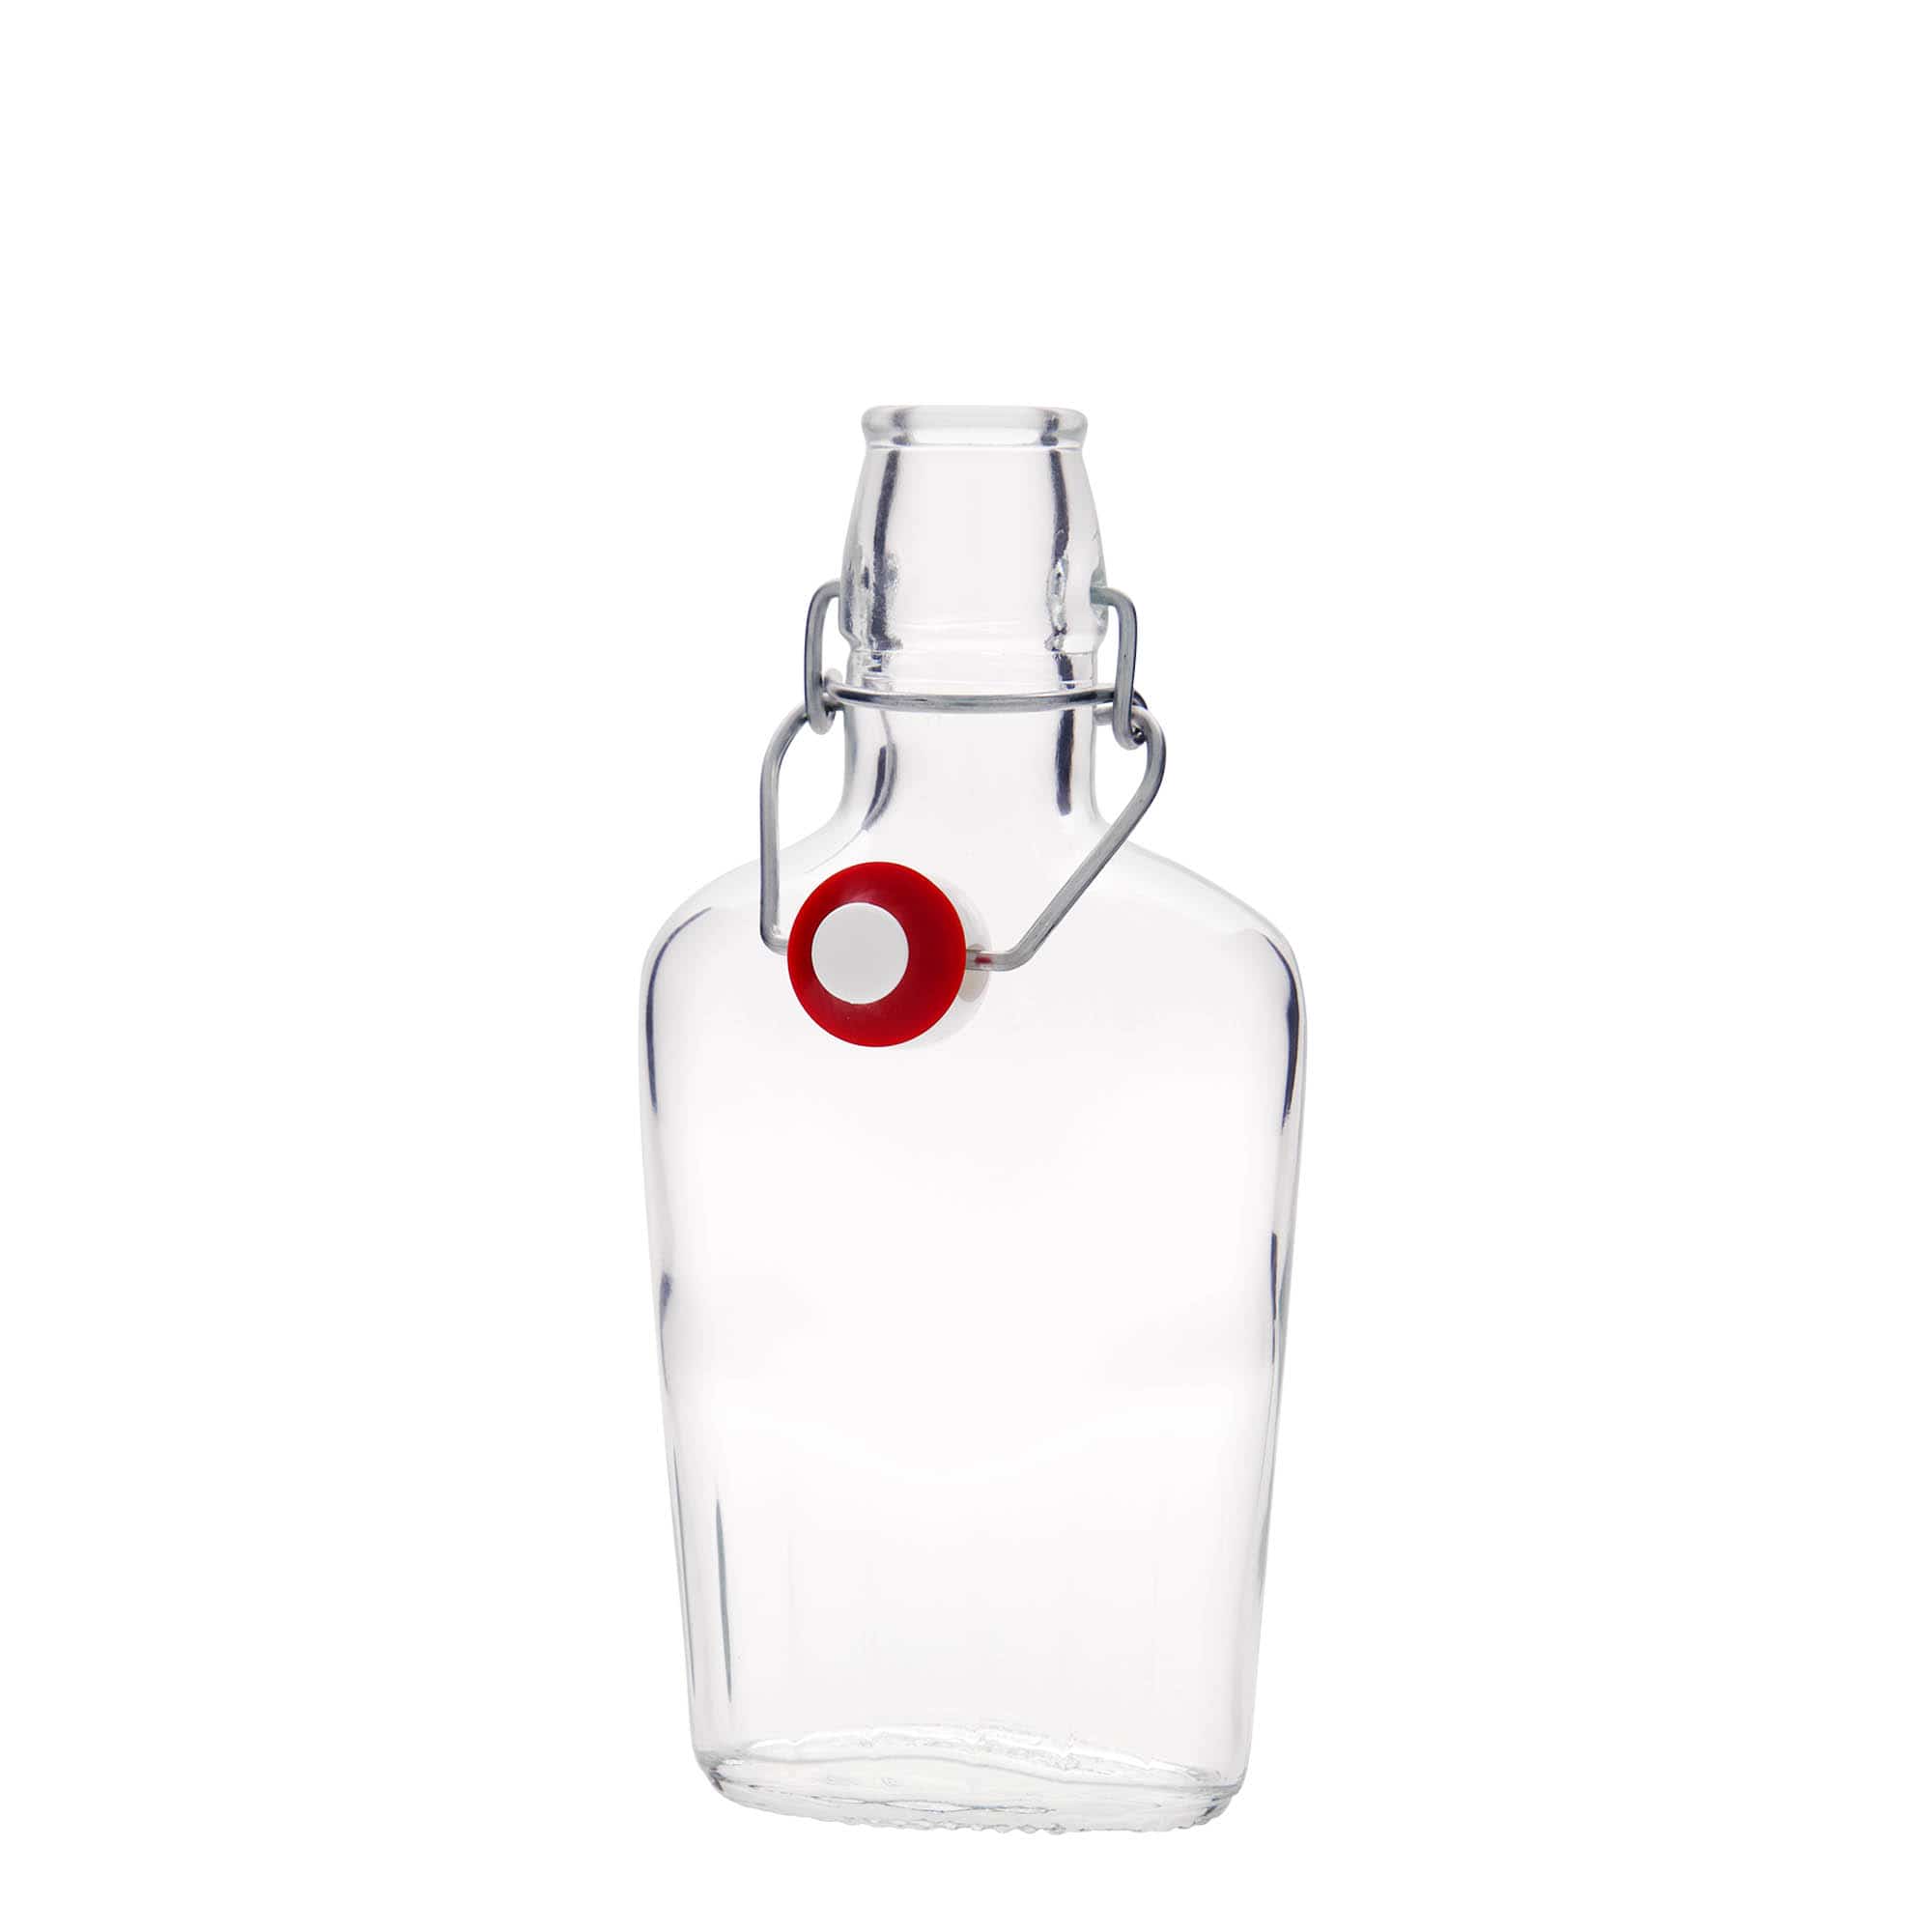 Botella de vidrio 'Fiaschetta' de 250 ml, ovalada, boca: tapón mecánico